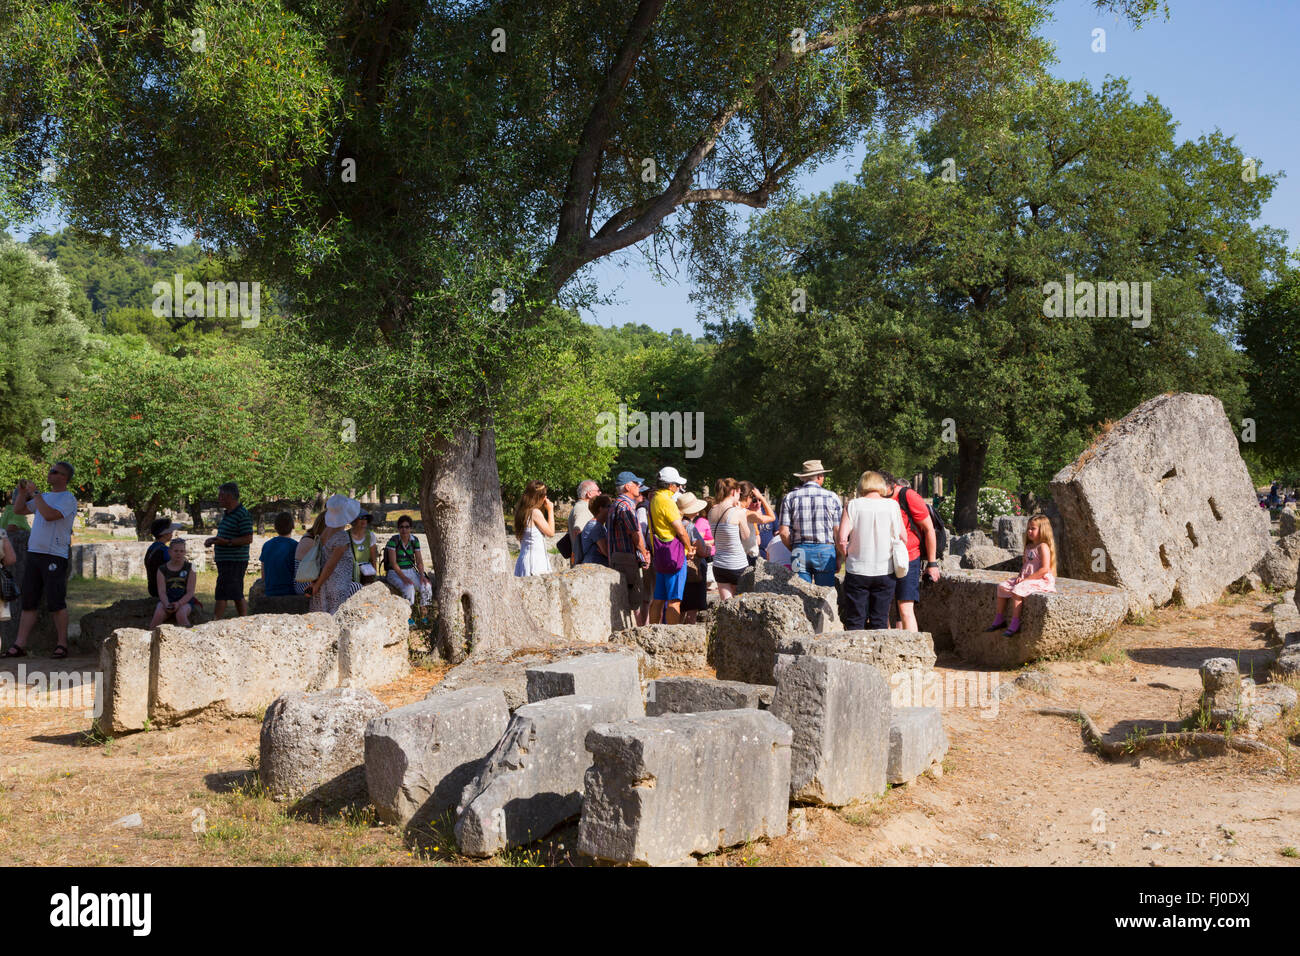 Olympie, Péloponnèse, Grèce. Un groupe de visiteurs de l'écoute d'un guide expliquant l'histoire de l'ancienne Olympie. Banque D'Images